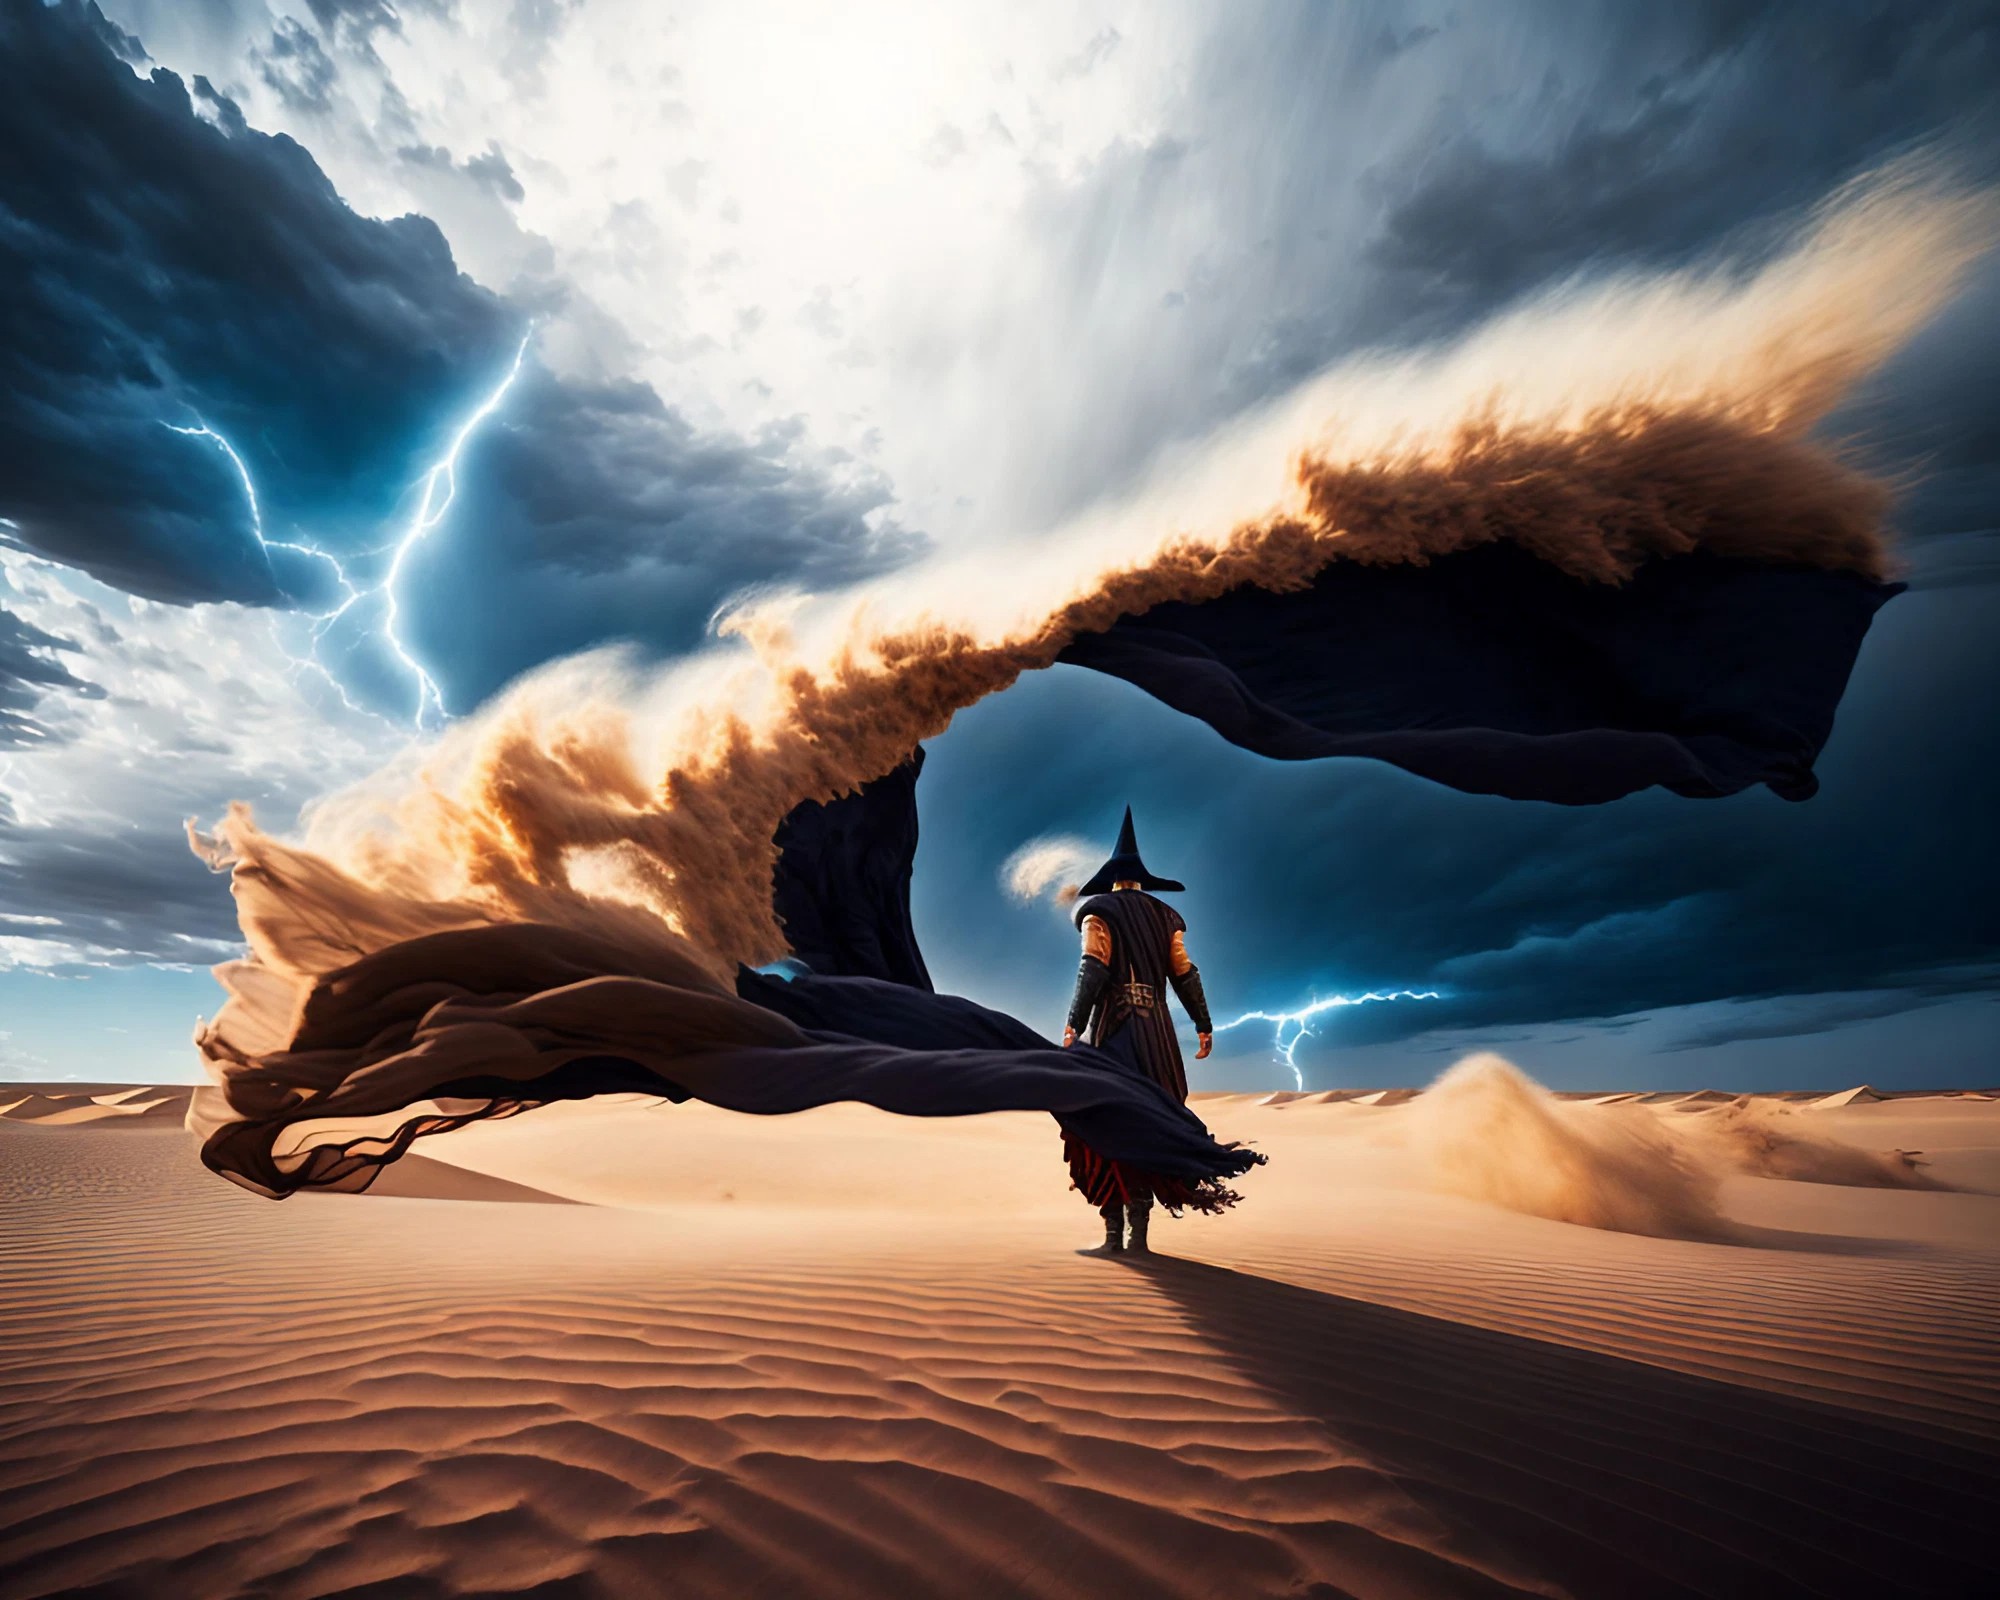 砂漠の中を歩くかっこいい魔法使いの後ろ姿＆台風の砂嵐と稲妻が走る竜巻の無料壁紙素材